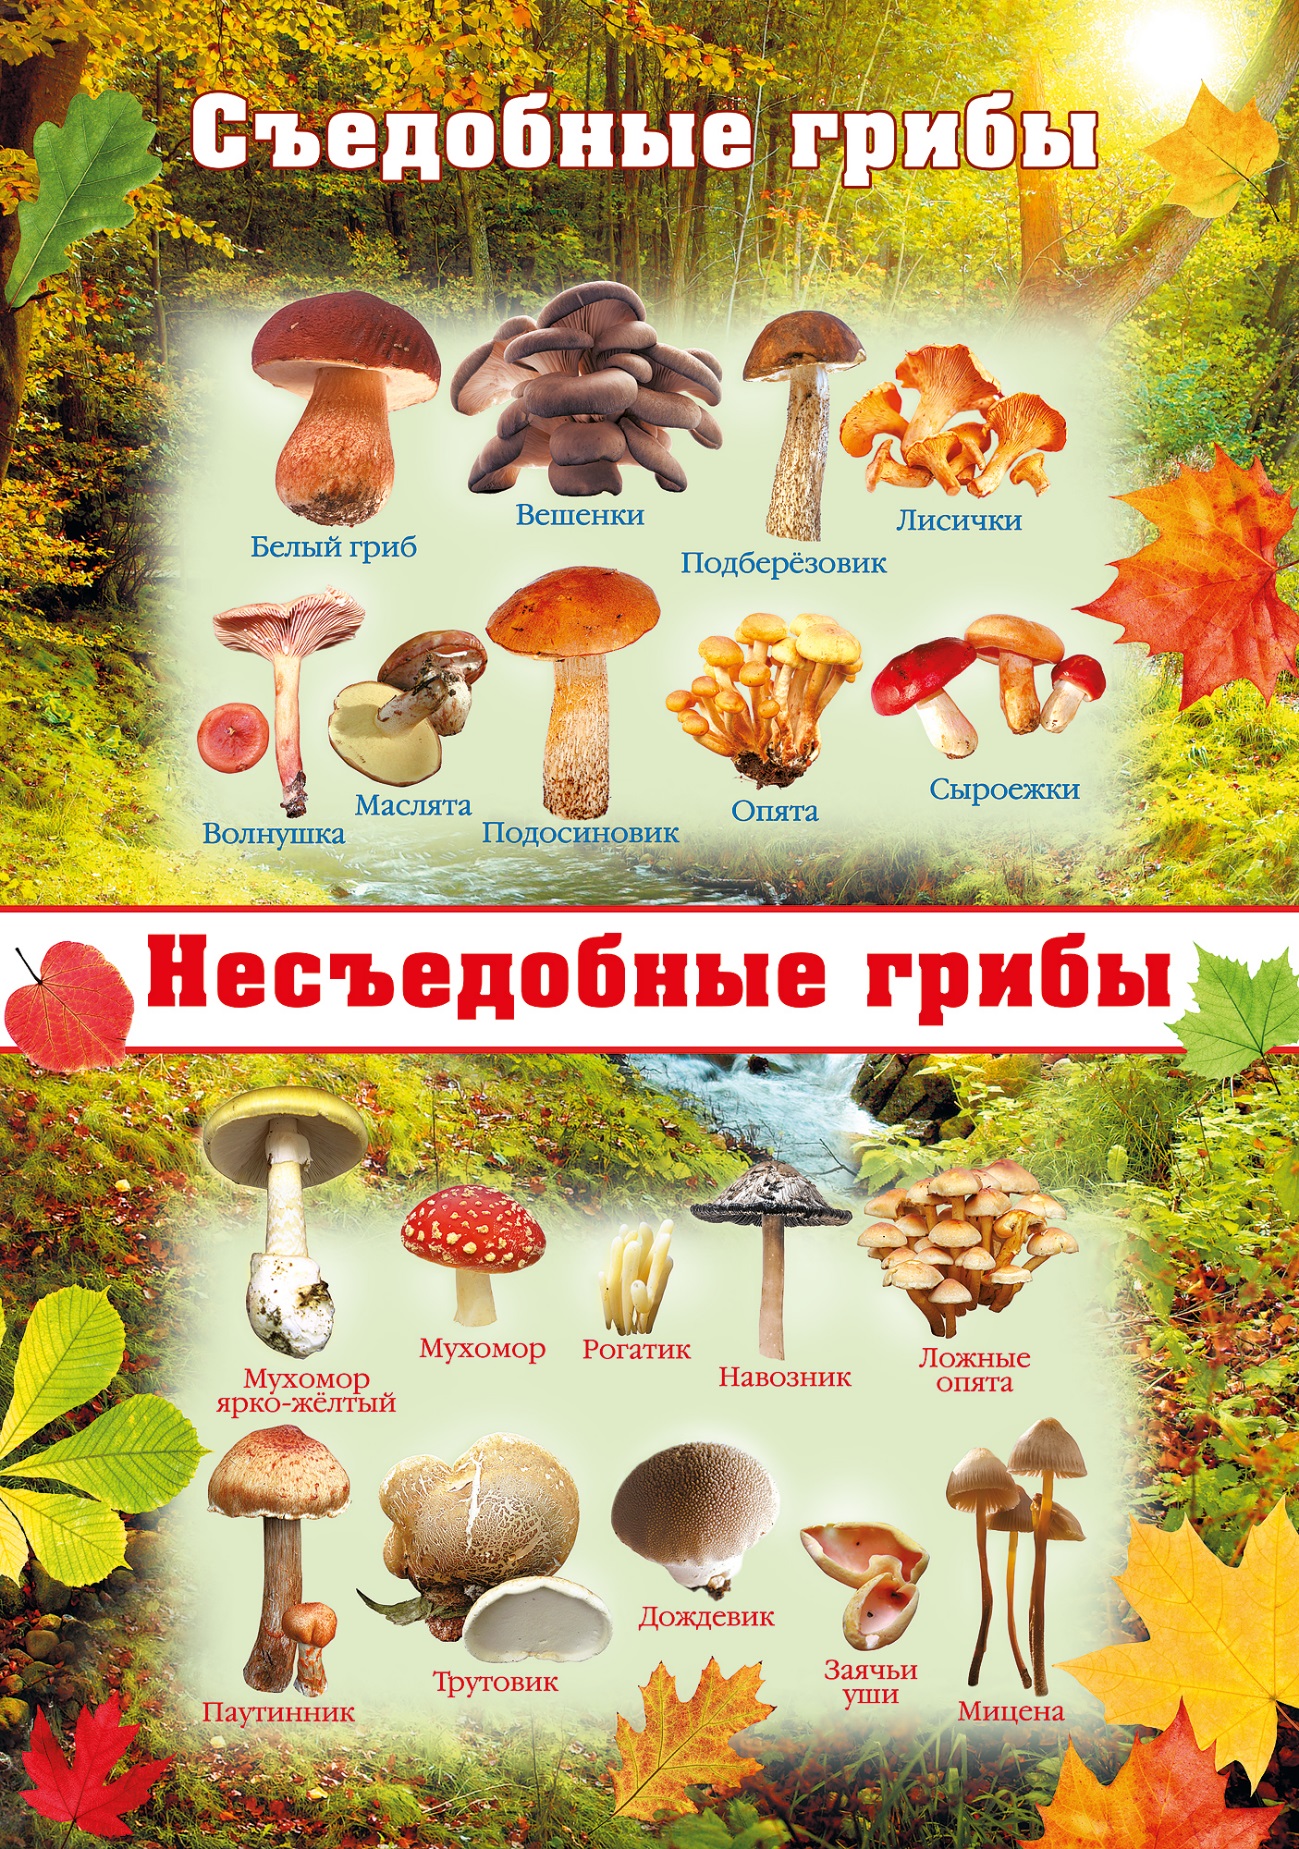 Информация для родителей Осторожно грибы